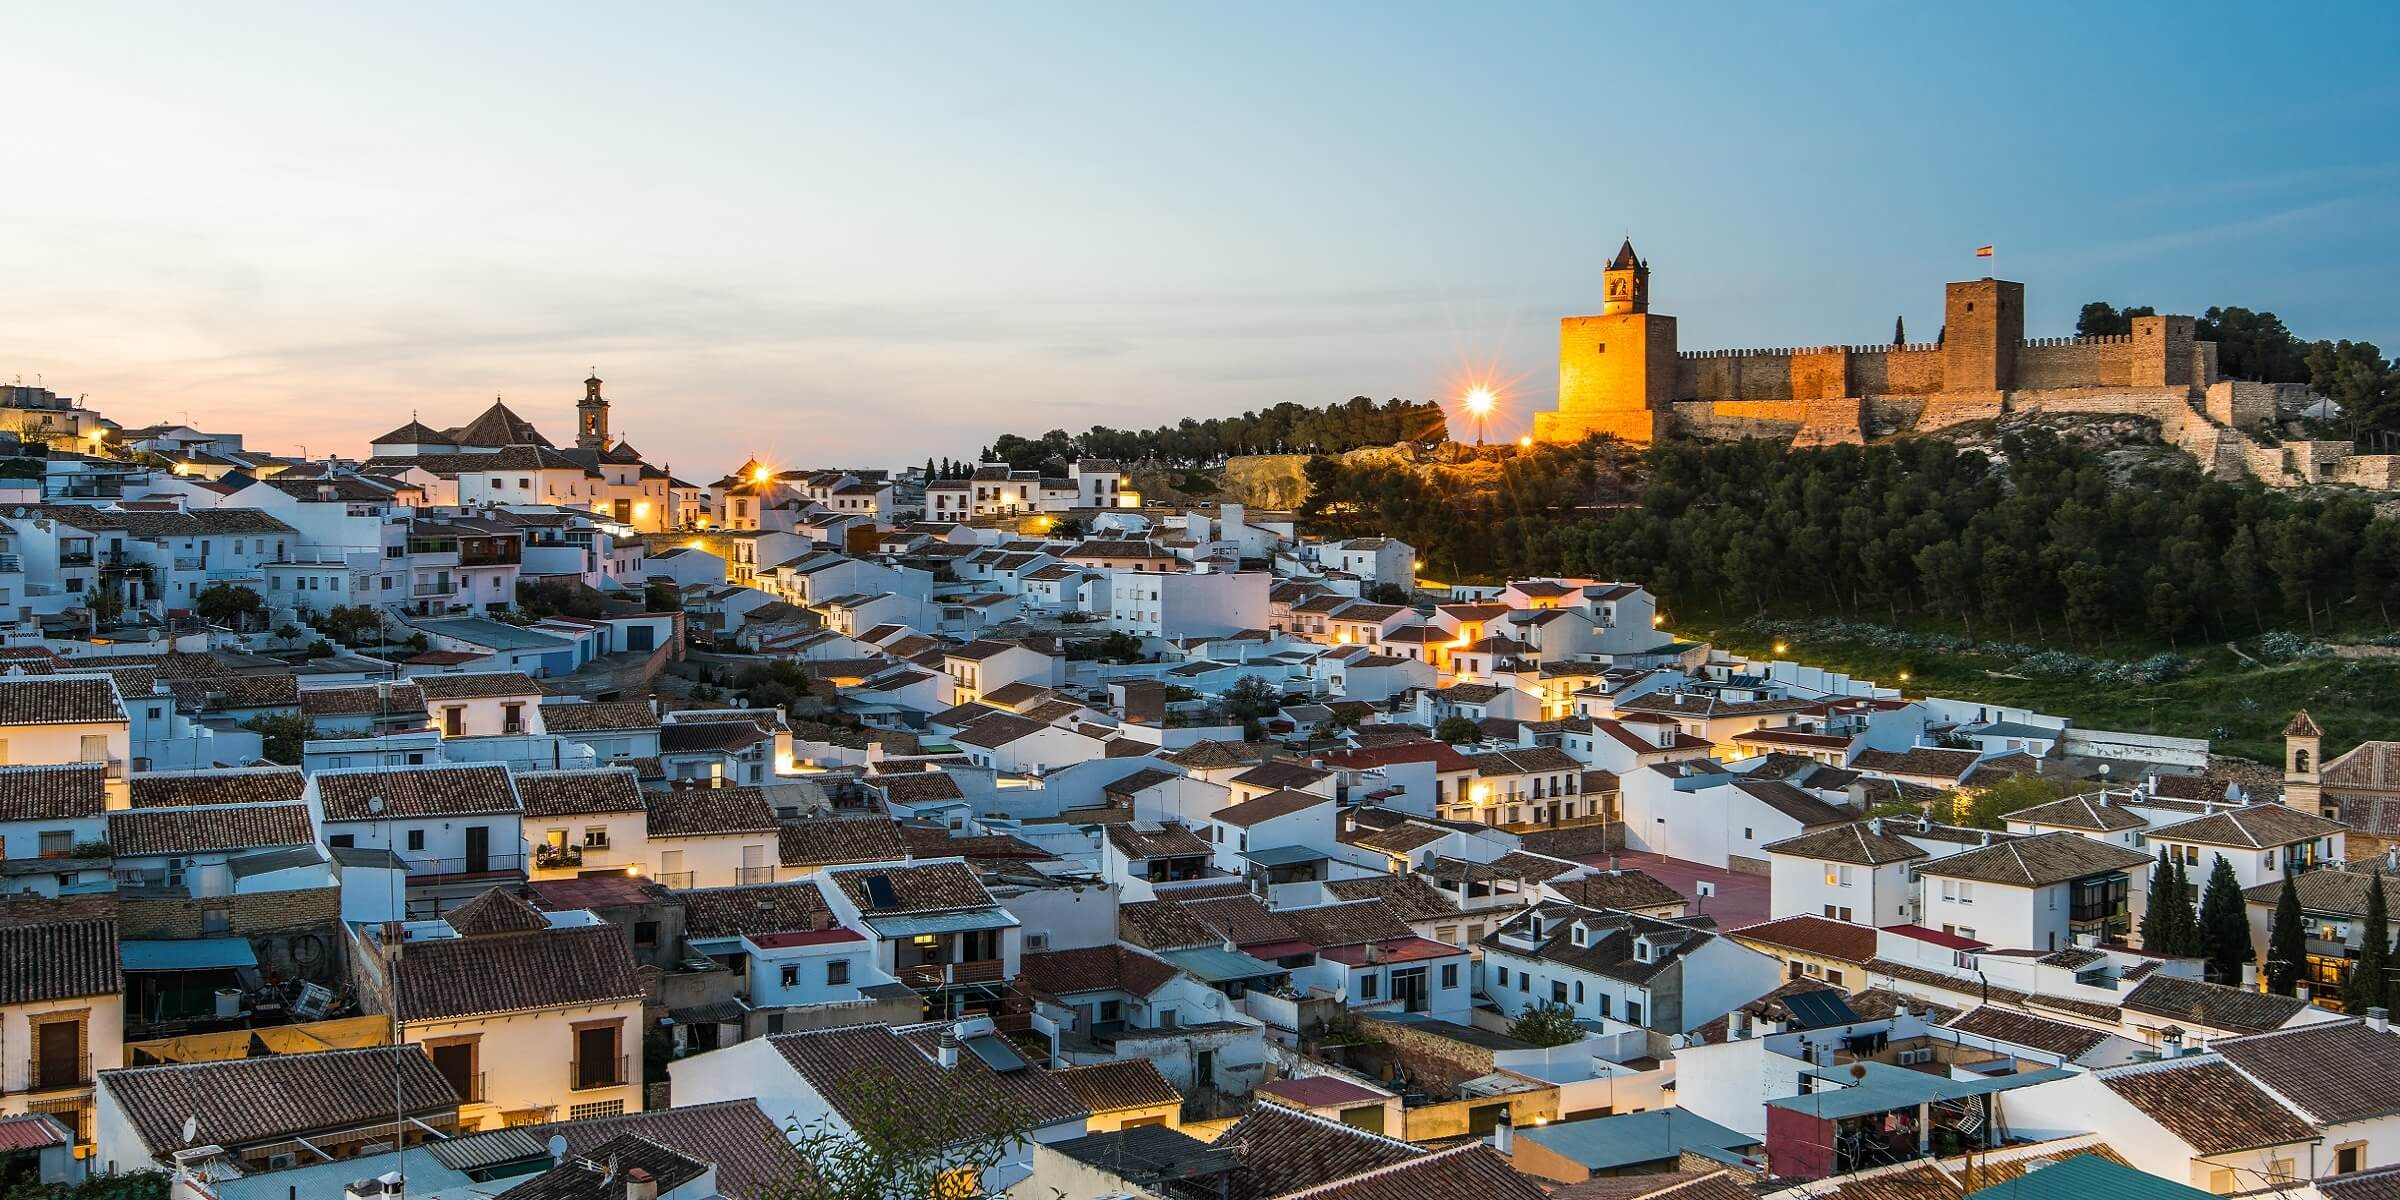 Die Stadt Antequera hat ihren ganz eignen verzaubernden Charme